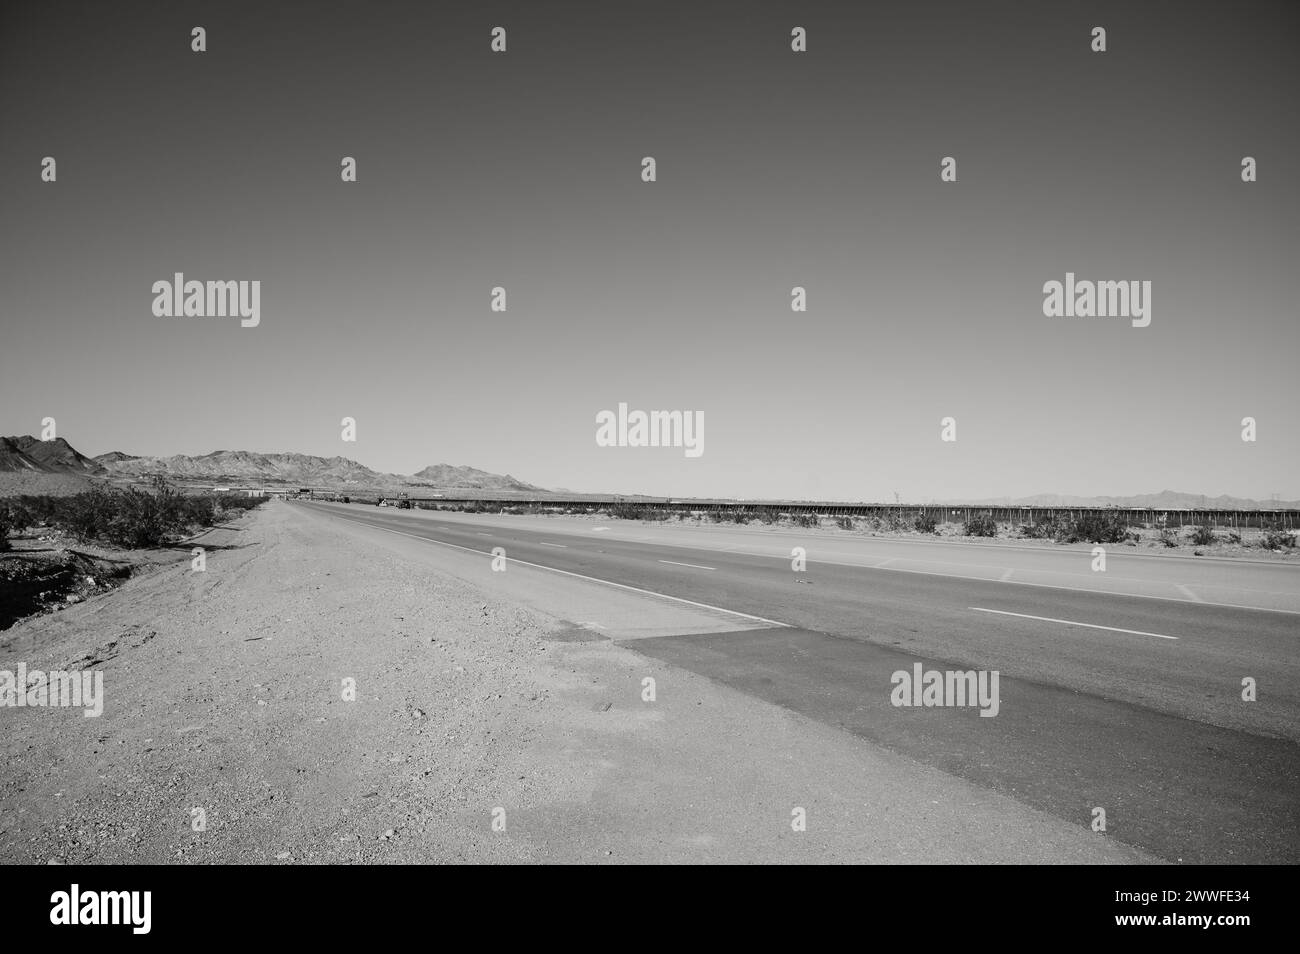 Autostrada 95 a sud di Las Vegas, vicino a Boulder City, nel deserto del Nevada. Immagine in bianco e nero. Immagine in bianco e nero. Foto Stock